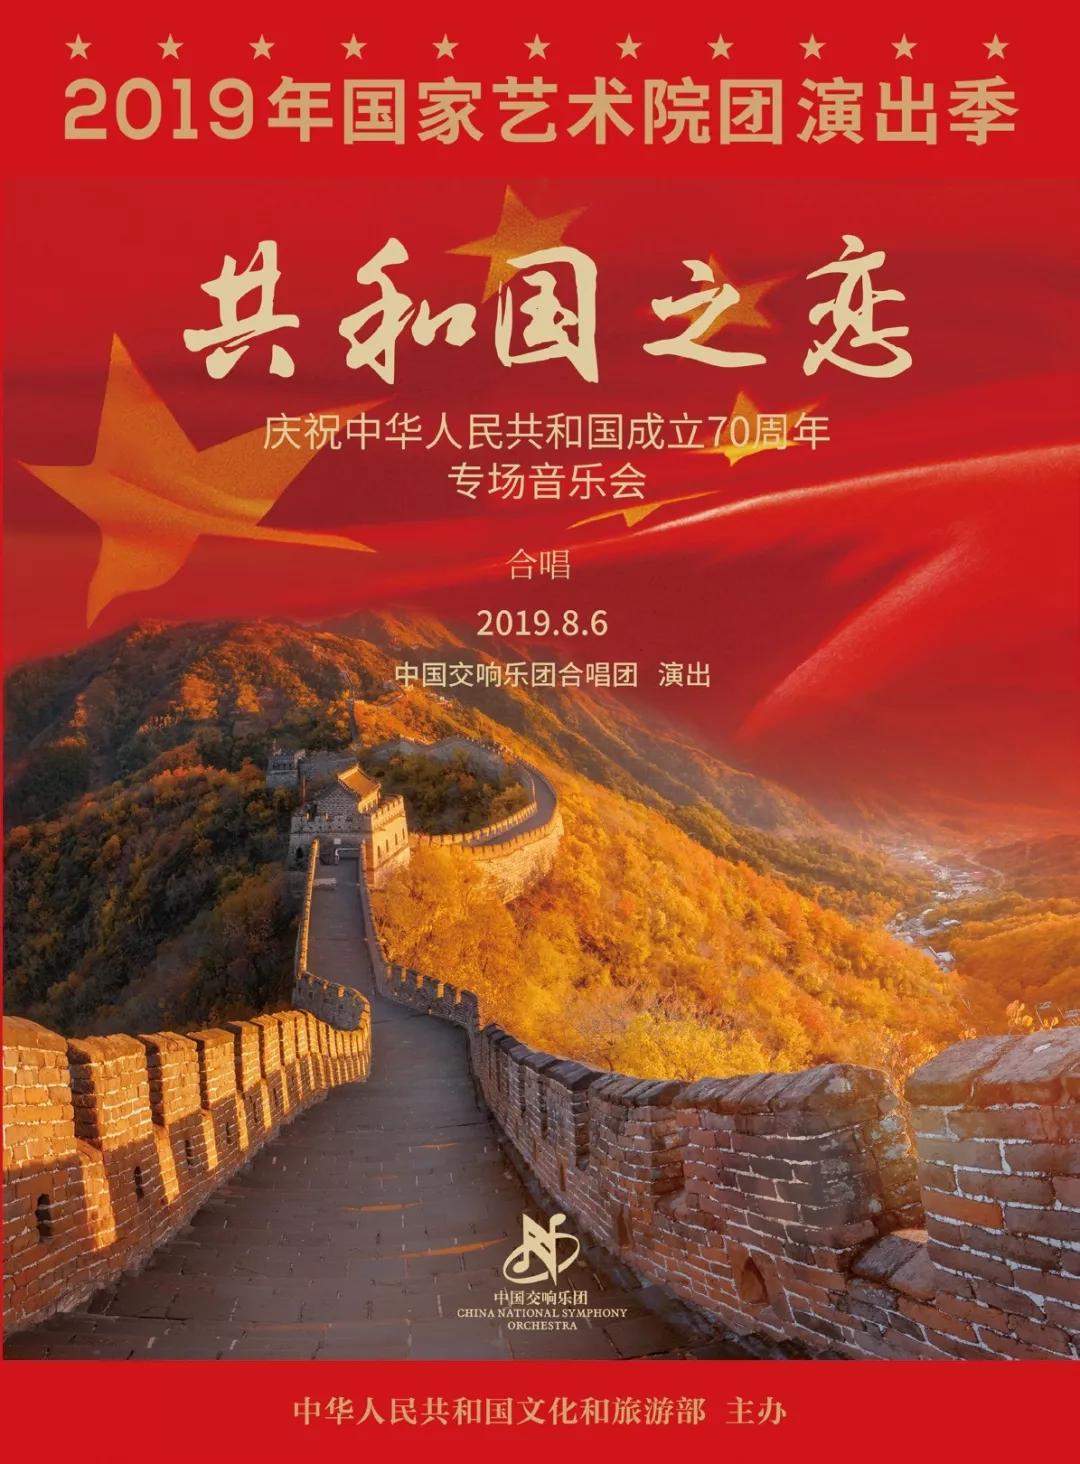 共和国之恋中国交响乐团合唱团庆祝中华人民共和国成立70周年专场音乐